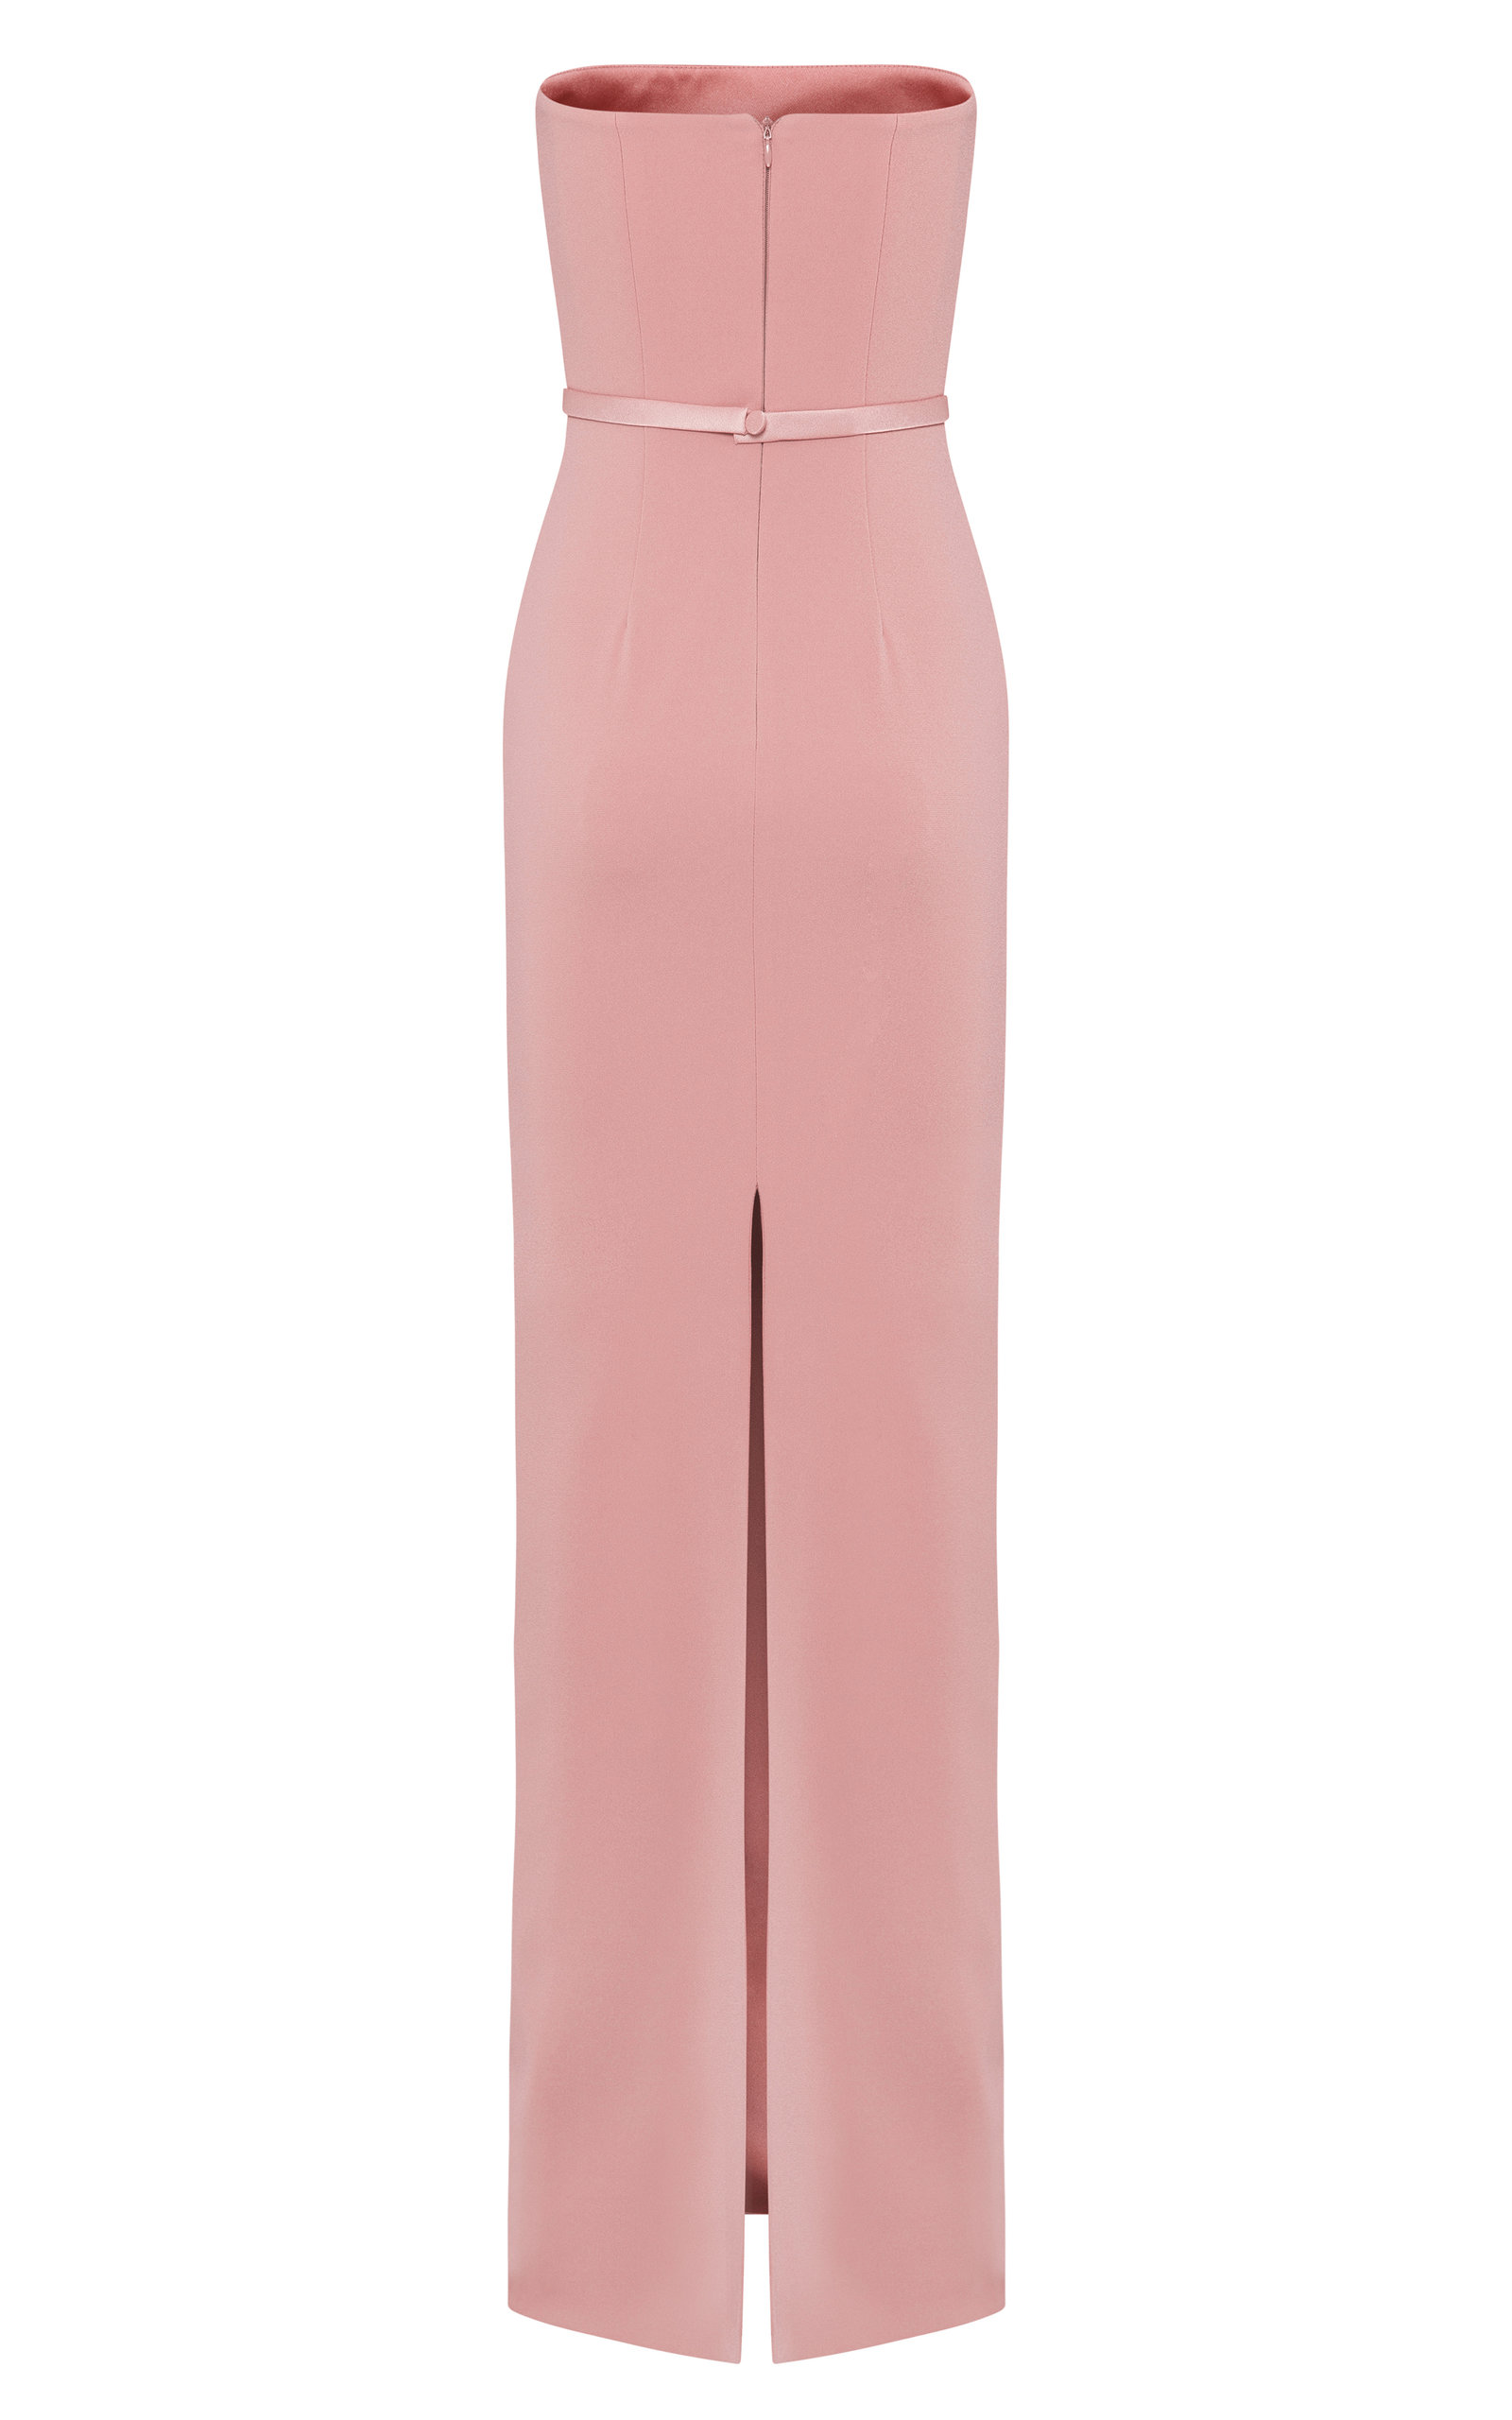 strapless column dress